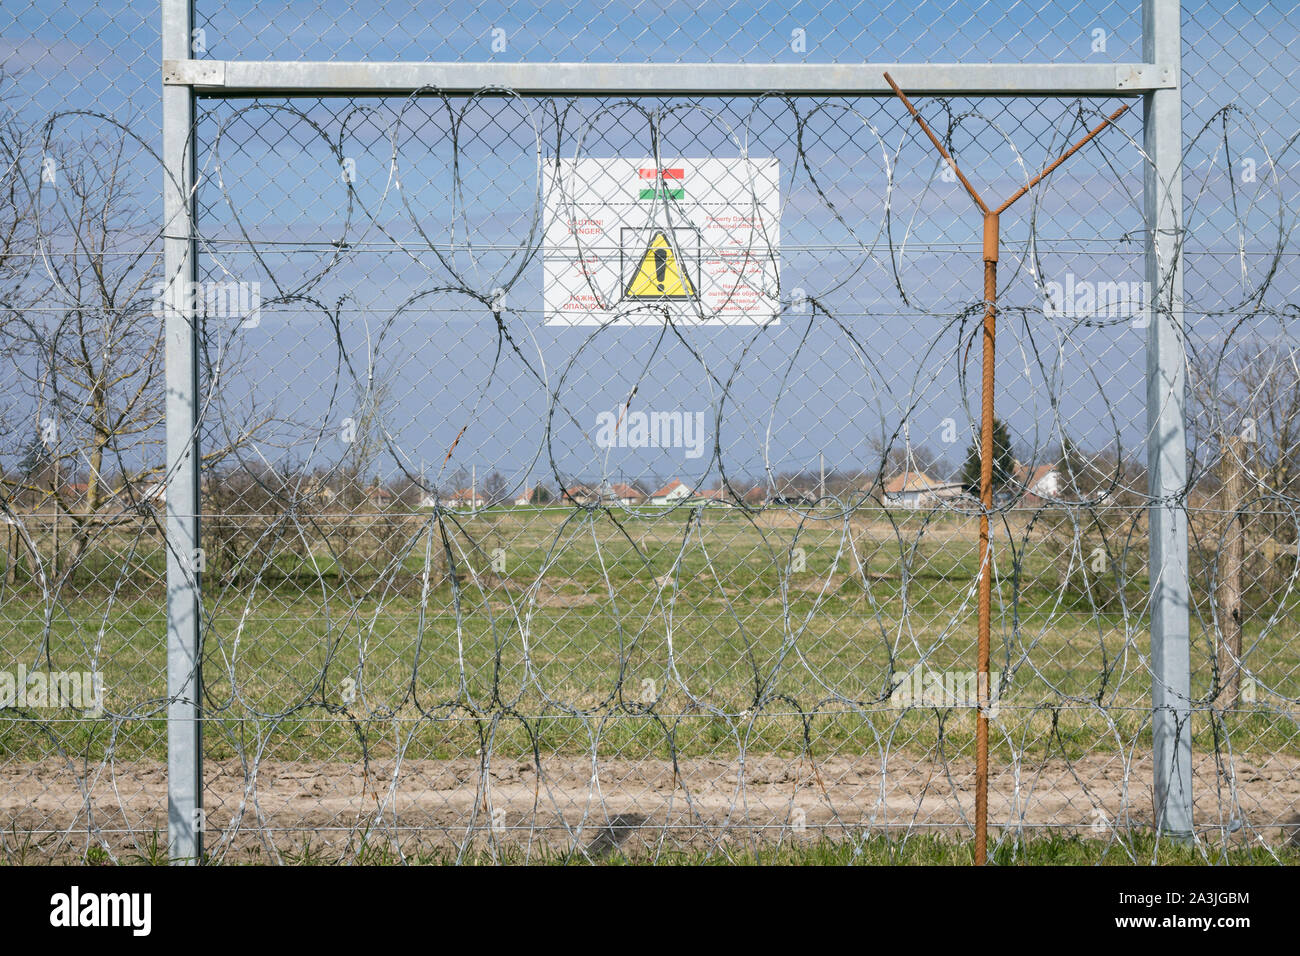 RASTINA, Serbien - 19. MÄRZ 2019: Grenzzaun zwischen Rastina & Bacsszentgyorgy (Ungarn). Diese Grenze wurde im Jahr 2015 gebaut, um die eingehenden Re zu stoppen Stockfoto